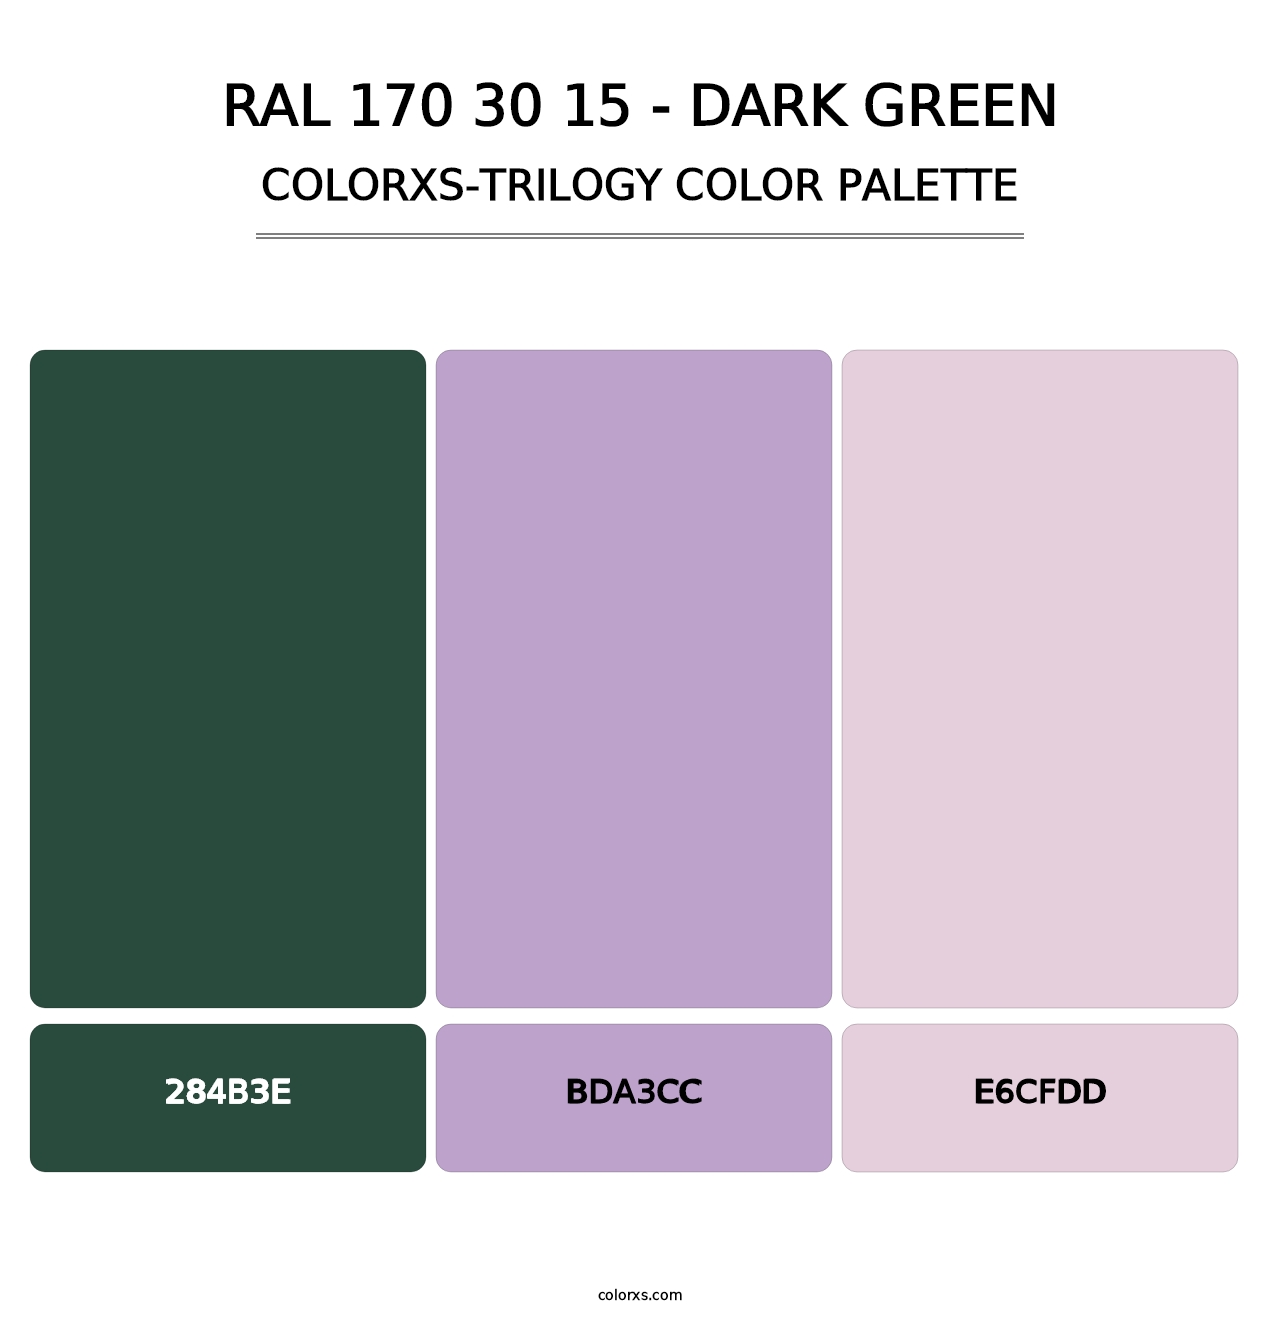 RAL 170 30 15 - Dark Green - Colorxs Trilogy Palette